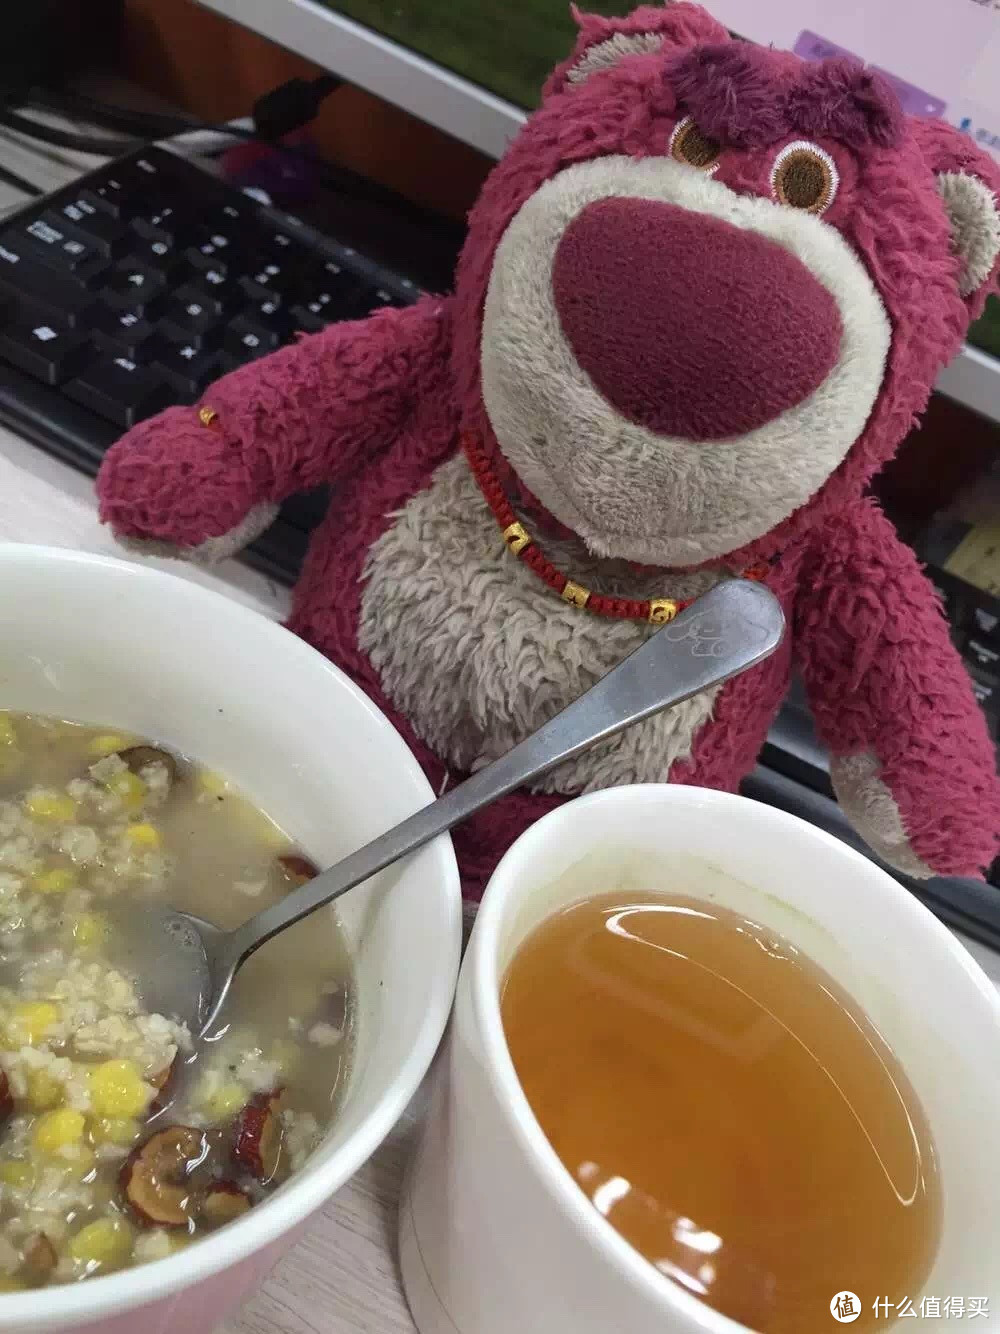 My love 草莓熊 Lotso Huggin Bear